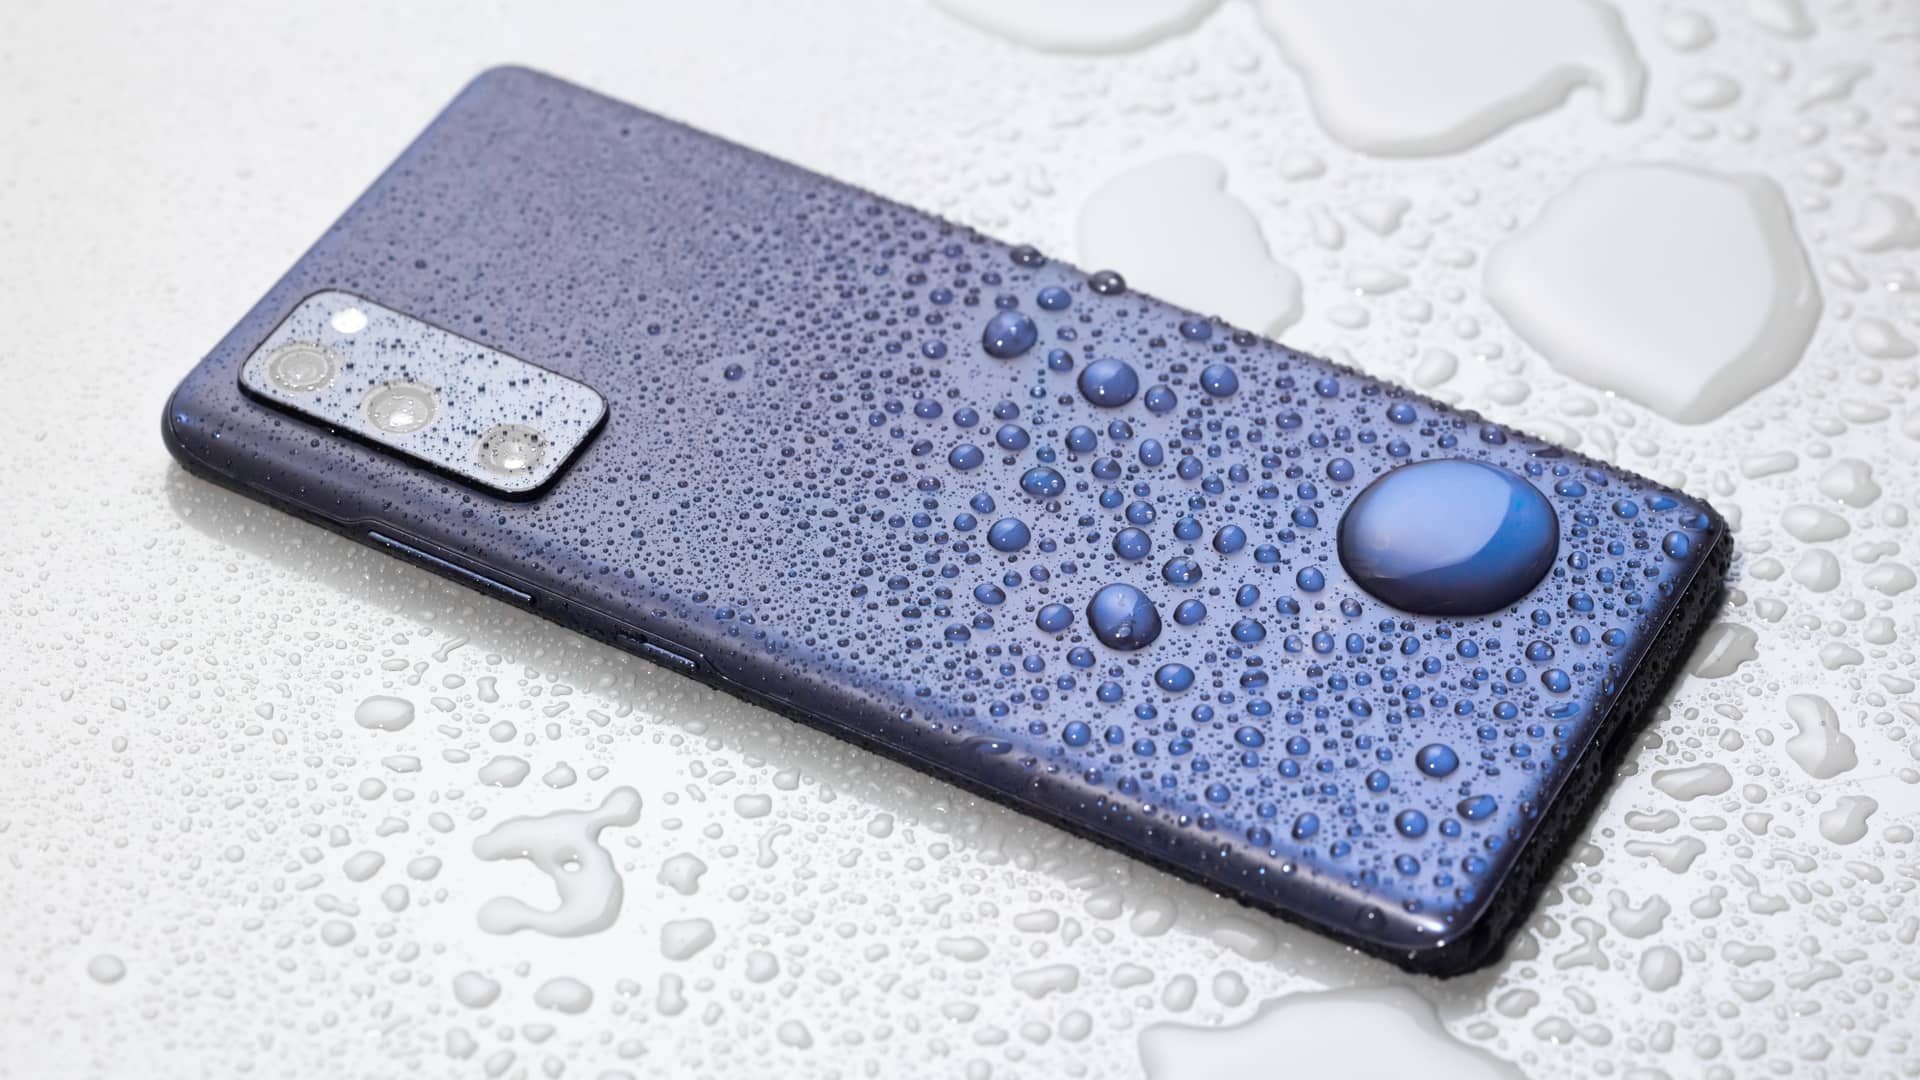 Samsung Galaxy S20 mojado para probar su resistencia al agua, como los que tiene a la venta movistar